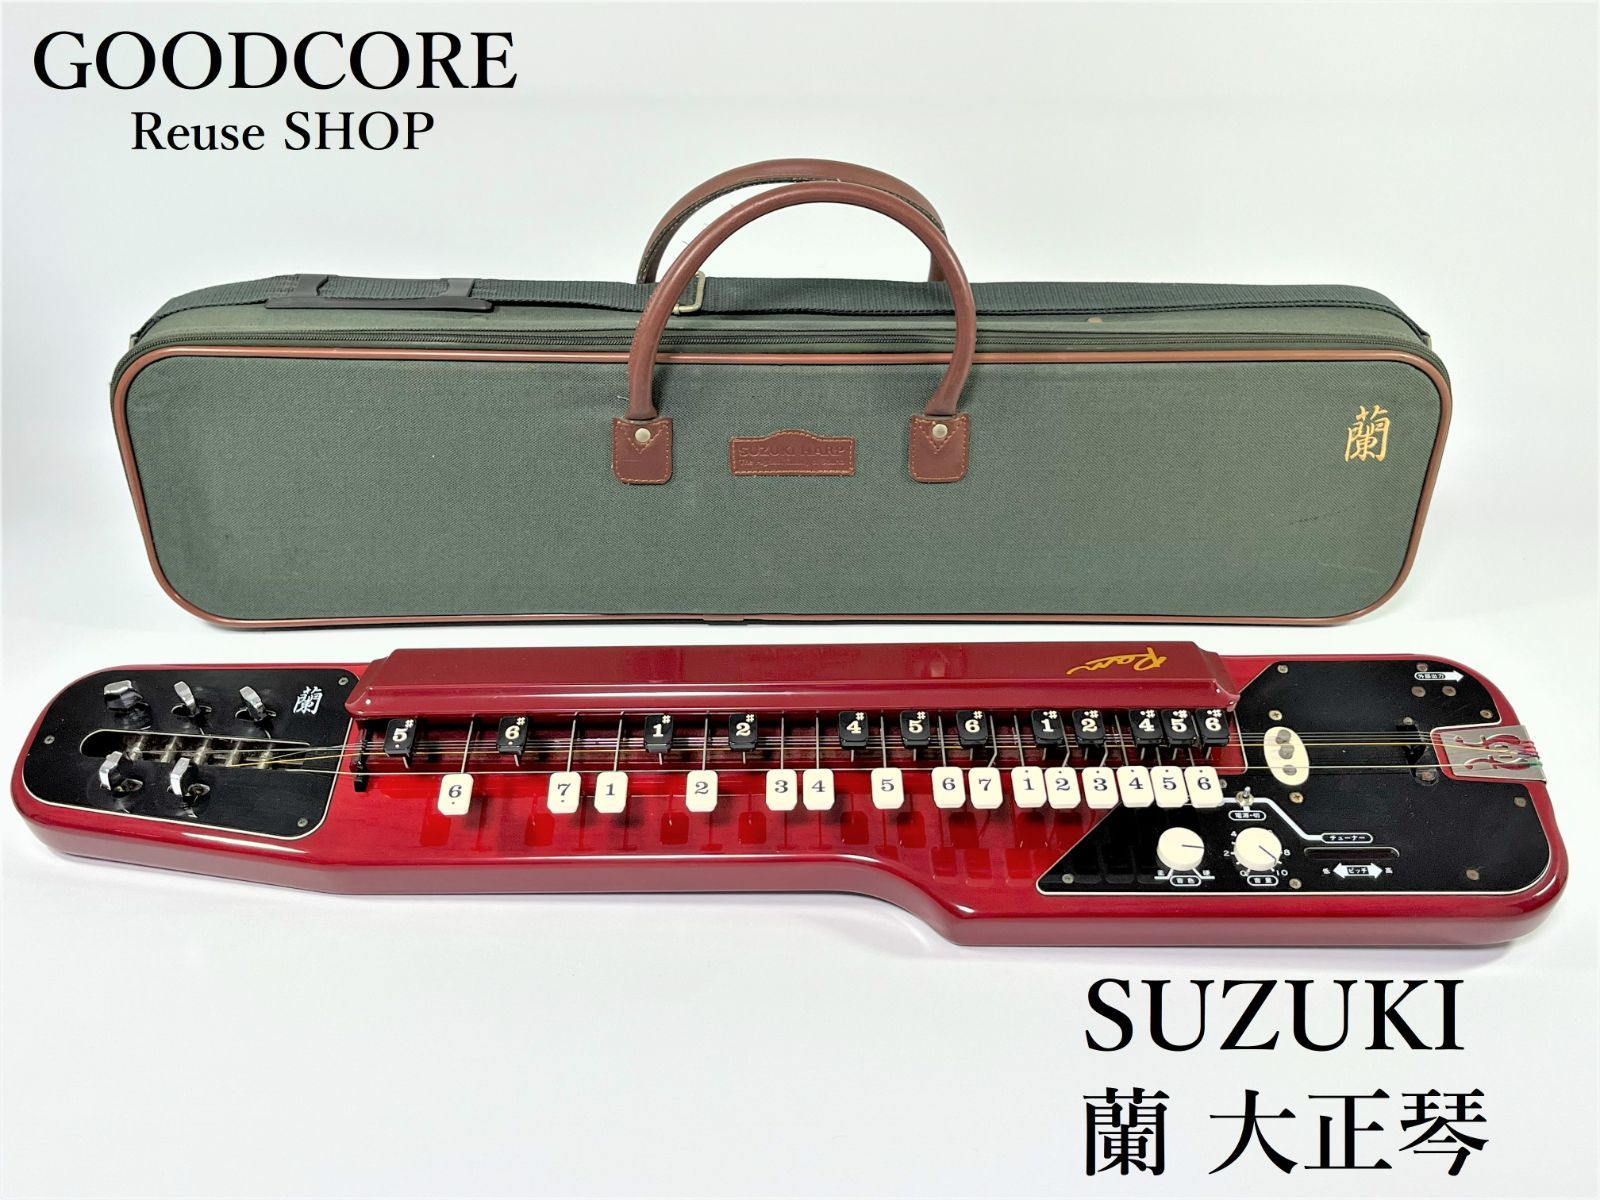 SUZUKI 電気大正琴 蘭 タイプ Ⅱ - 弦楽器